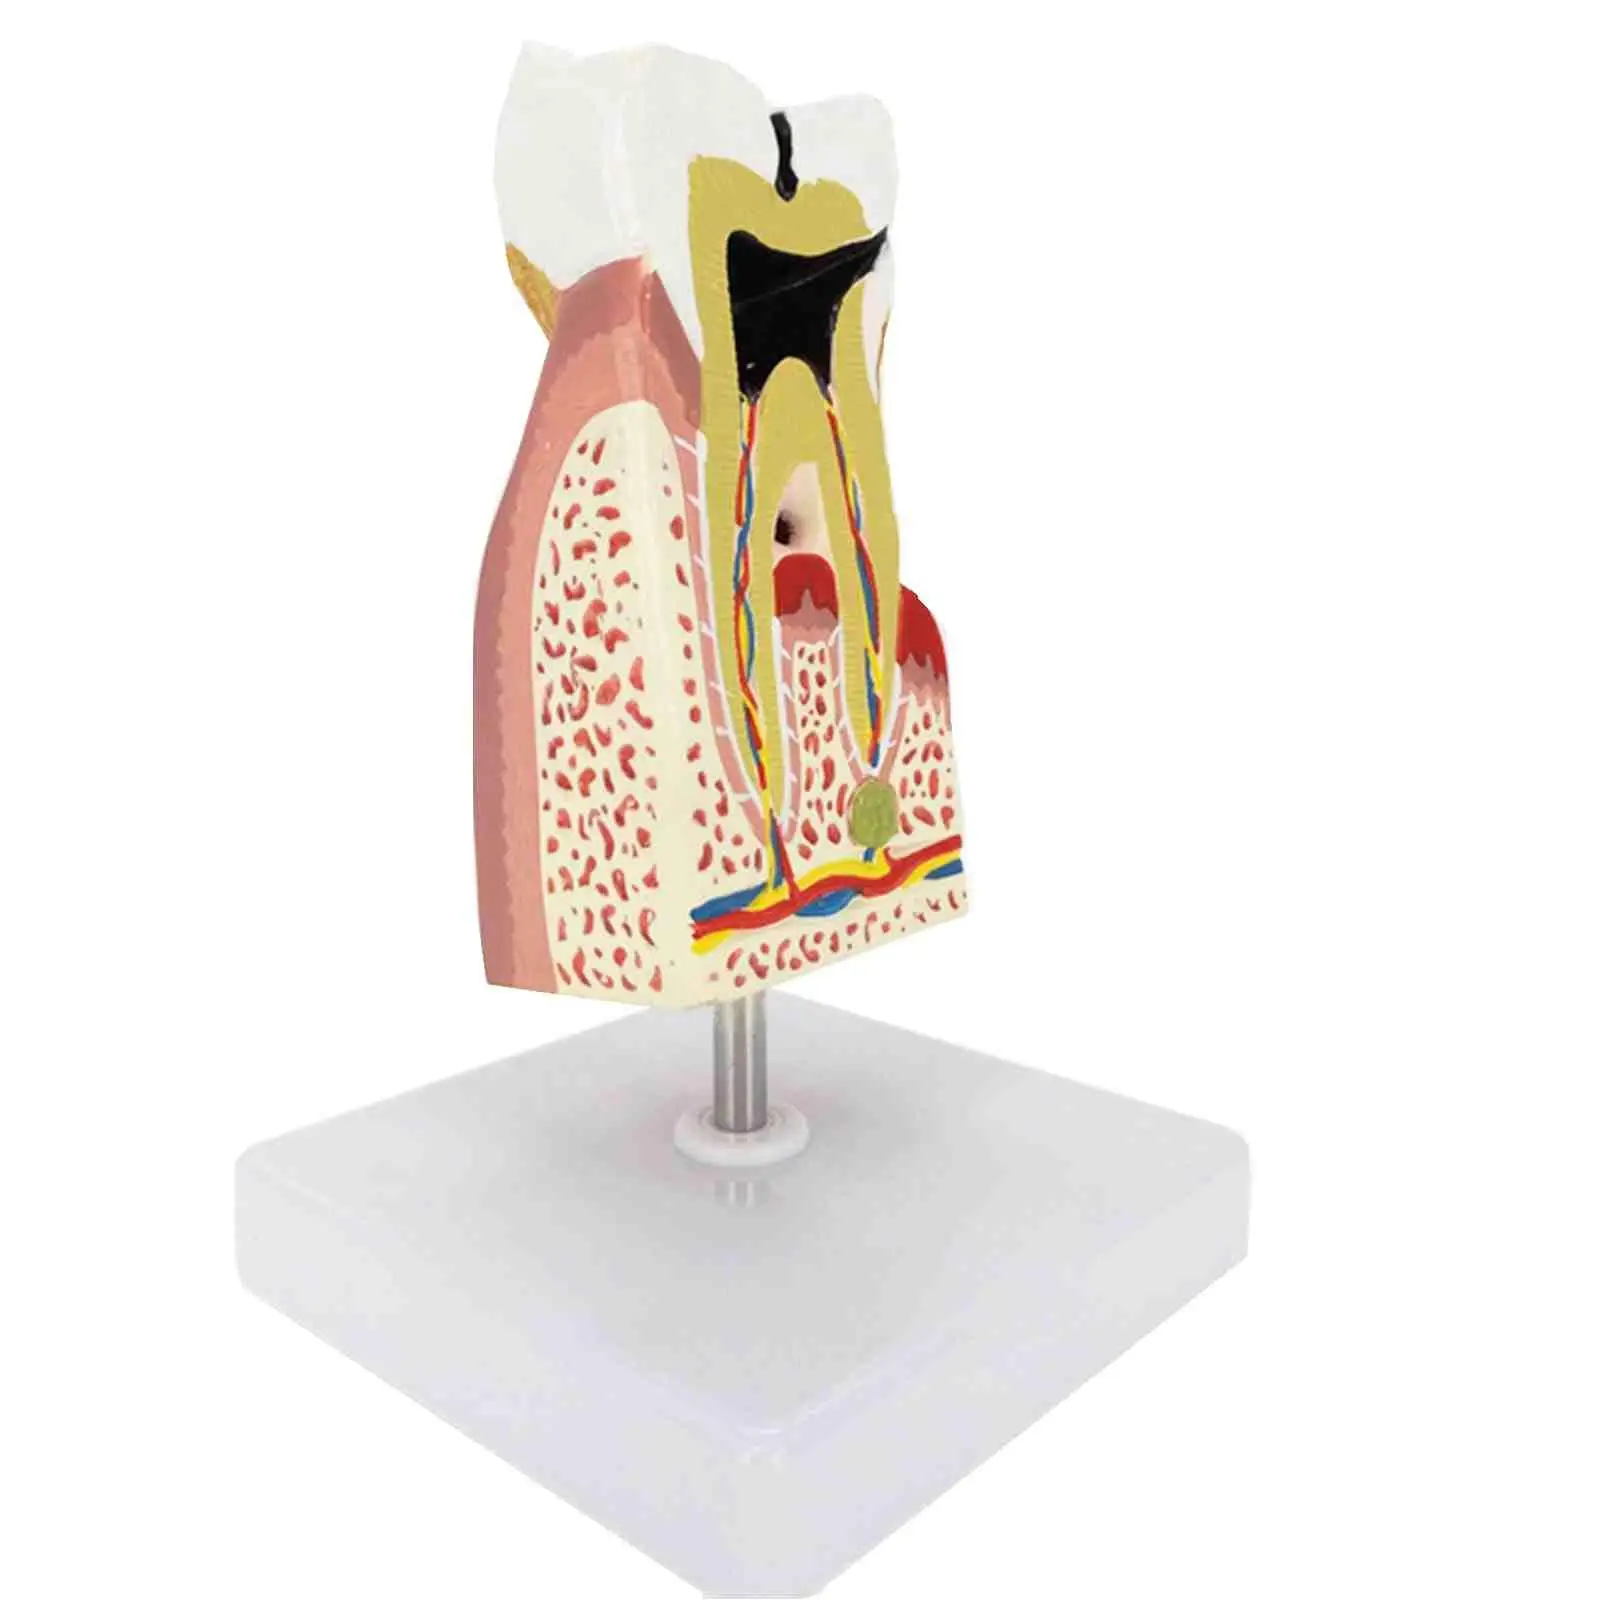 Анатомическая модель больных зубов человека из ПВХ, медицинская анатомия для обучения пациентов